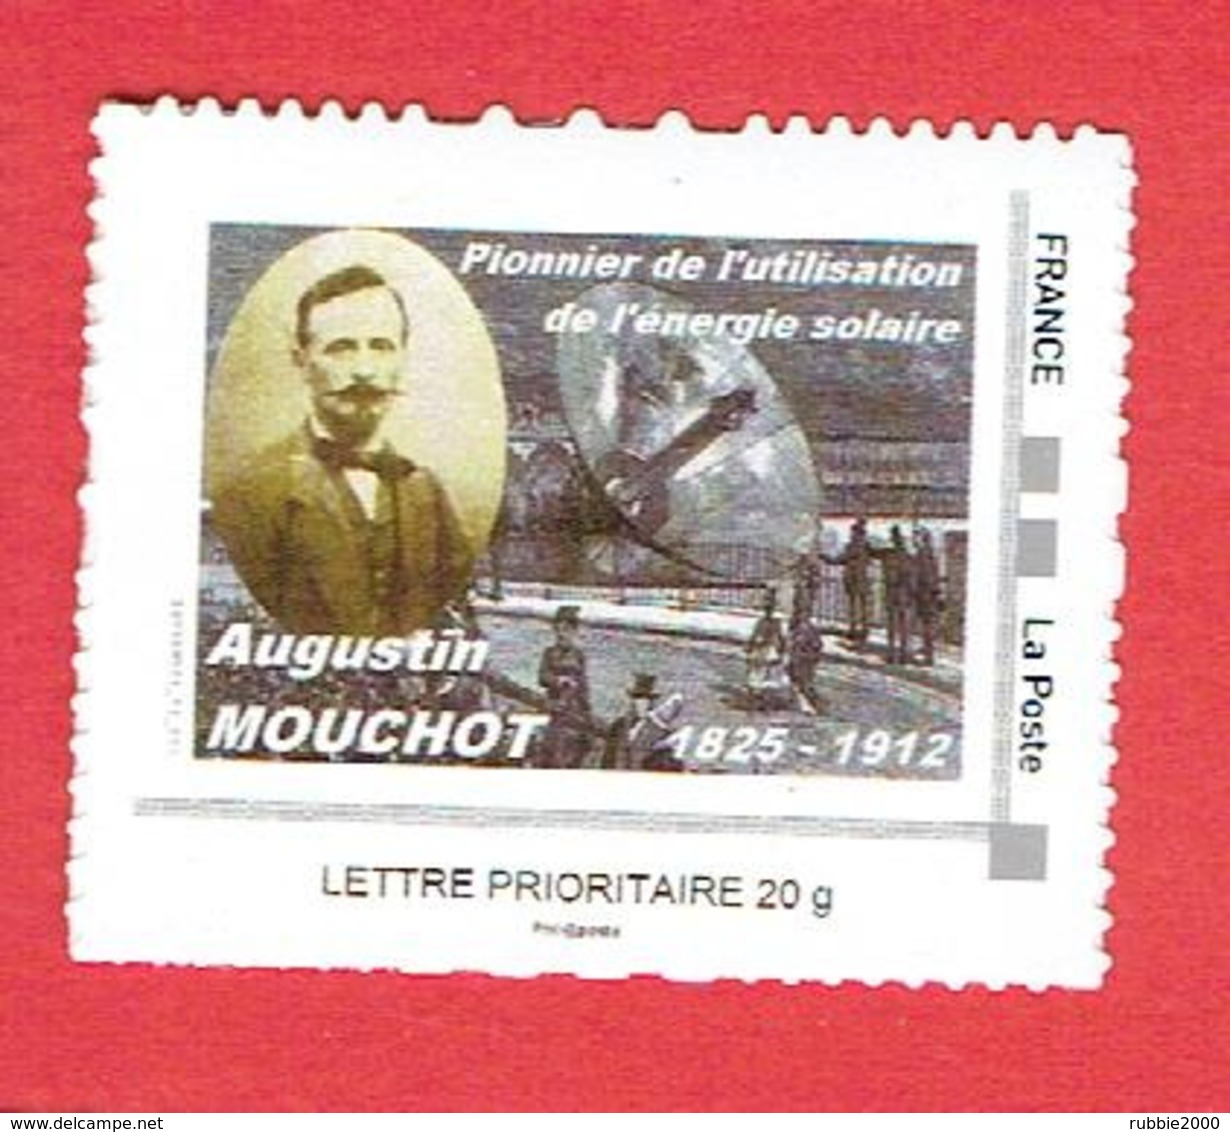 FRANCE TIMBRE NEUF AUGUSTE MOUCHOT PIONNIER DE L ENERGIE SOLAIRE 2012 SEMUR EN AUXOIS 1825 1912 - Environment & Climate Protection